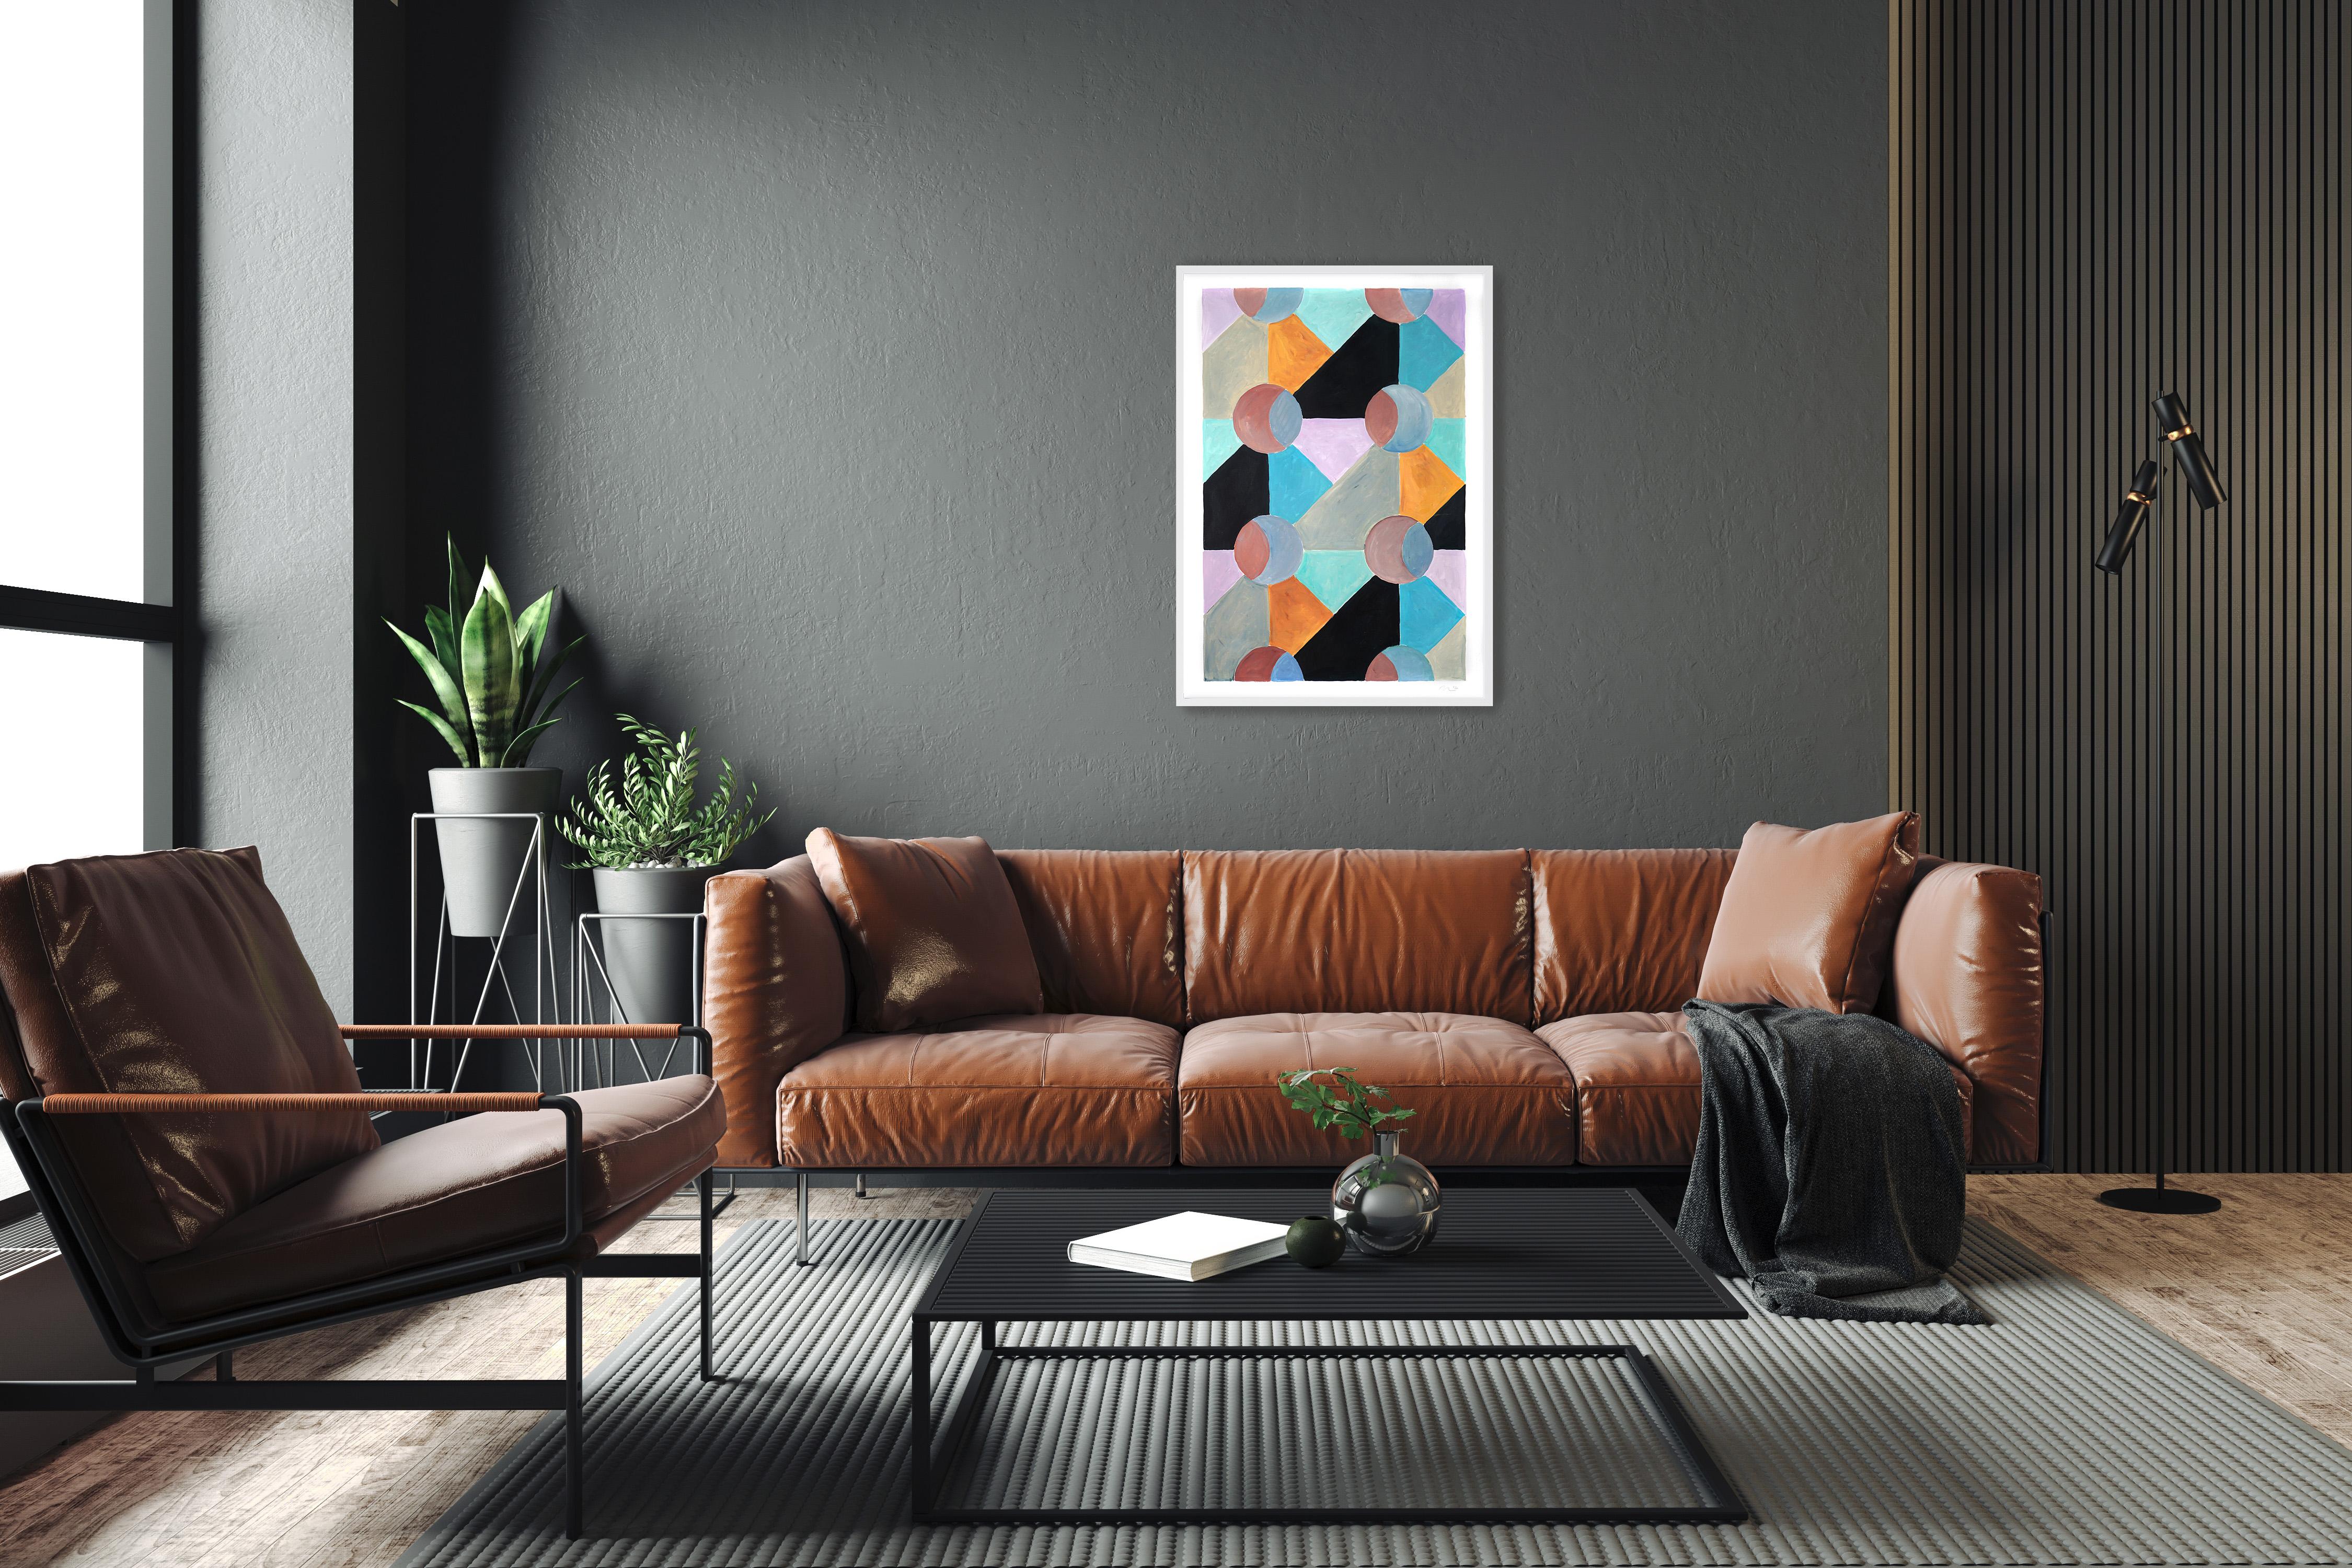 Ces séries de peintures de Natalia Roman s'inspirent des formes géométriques et minimalistes et des peintures du début du modernisme, avec un accent particulier sur les formes Art déco des années 30, 40 et 50. Les combinaisons de couleurs subtiles